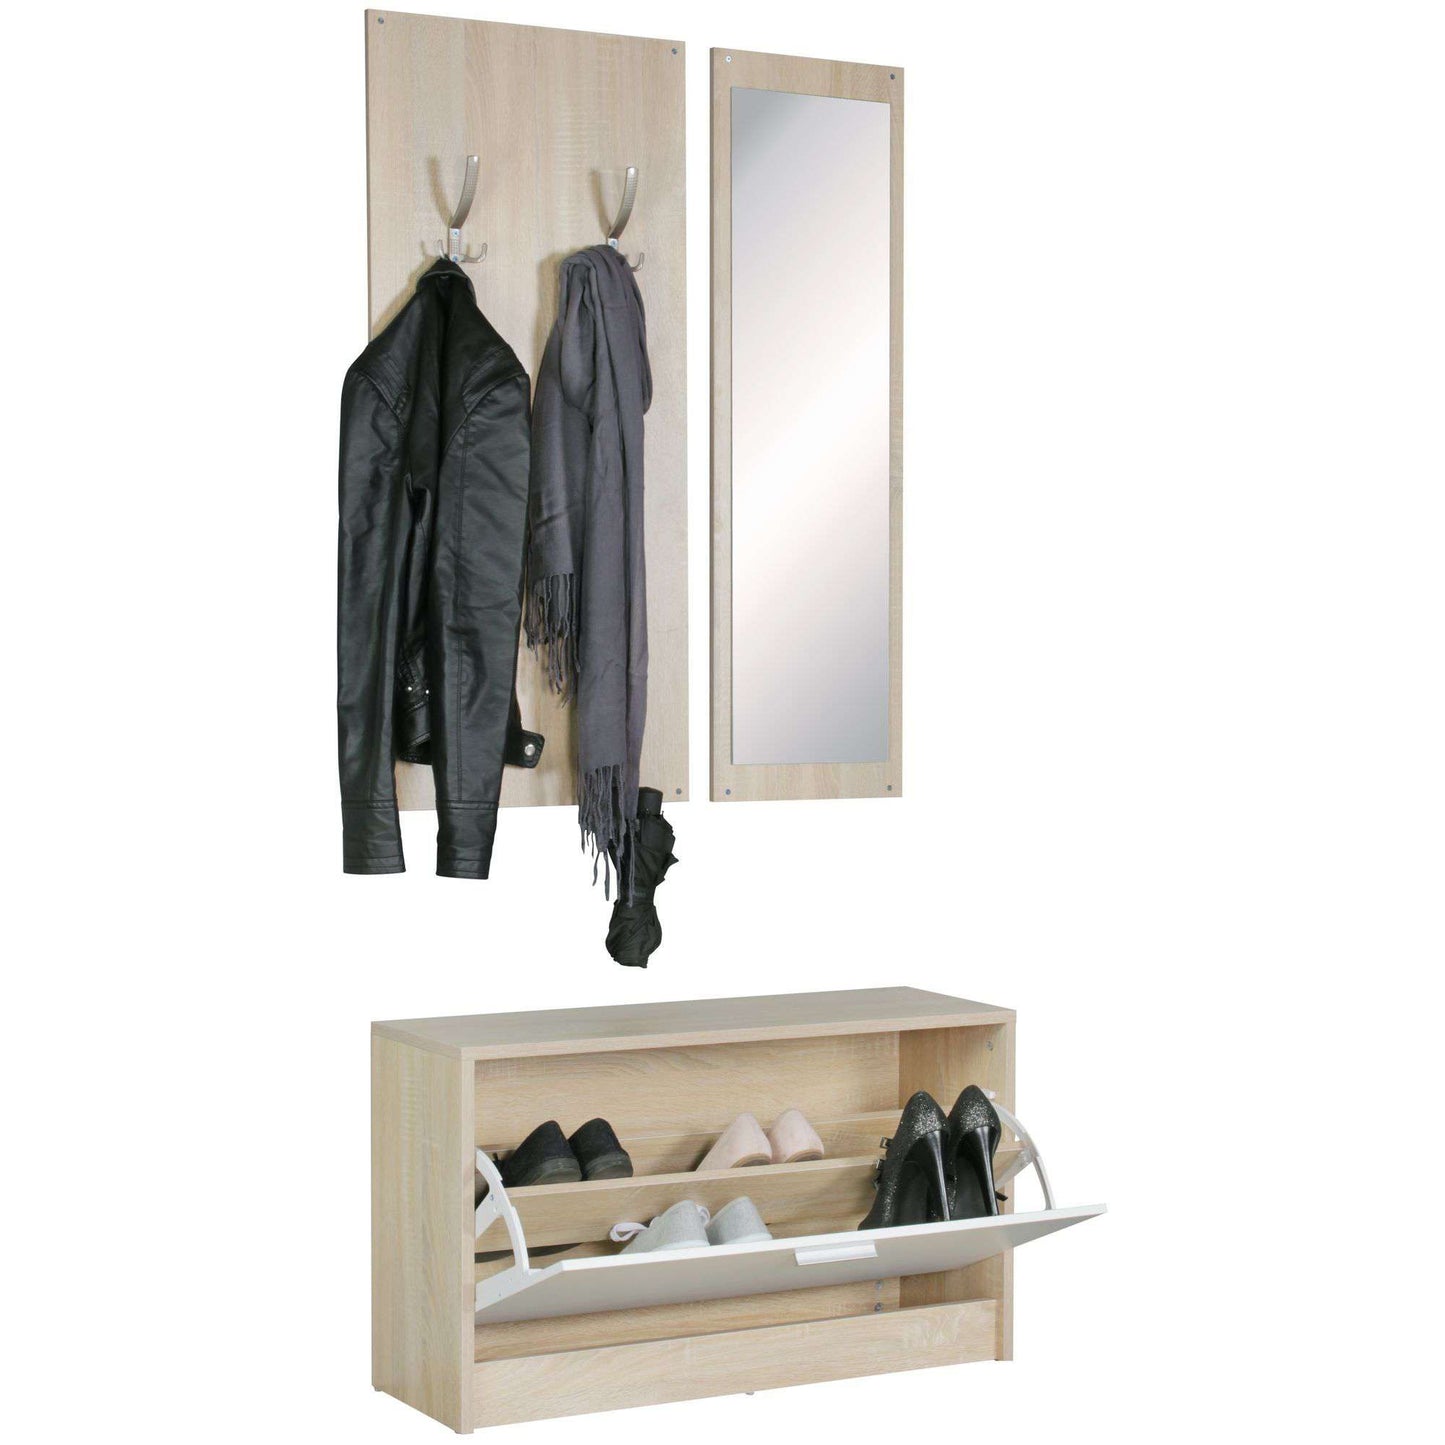 Nancy's Wall Wardrobe - Wall Coat Rack - Shoe Cabinet